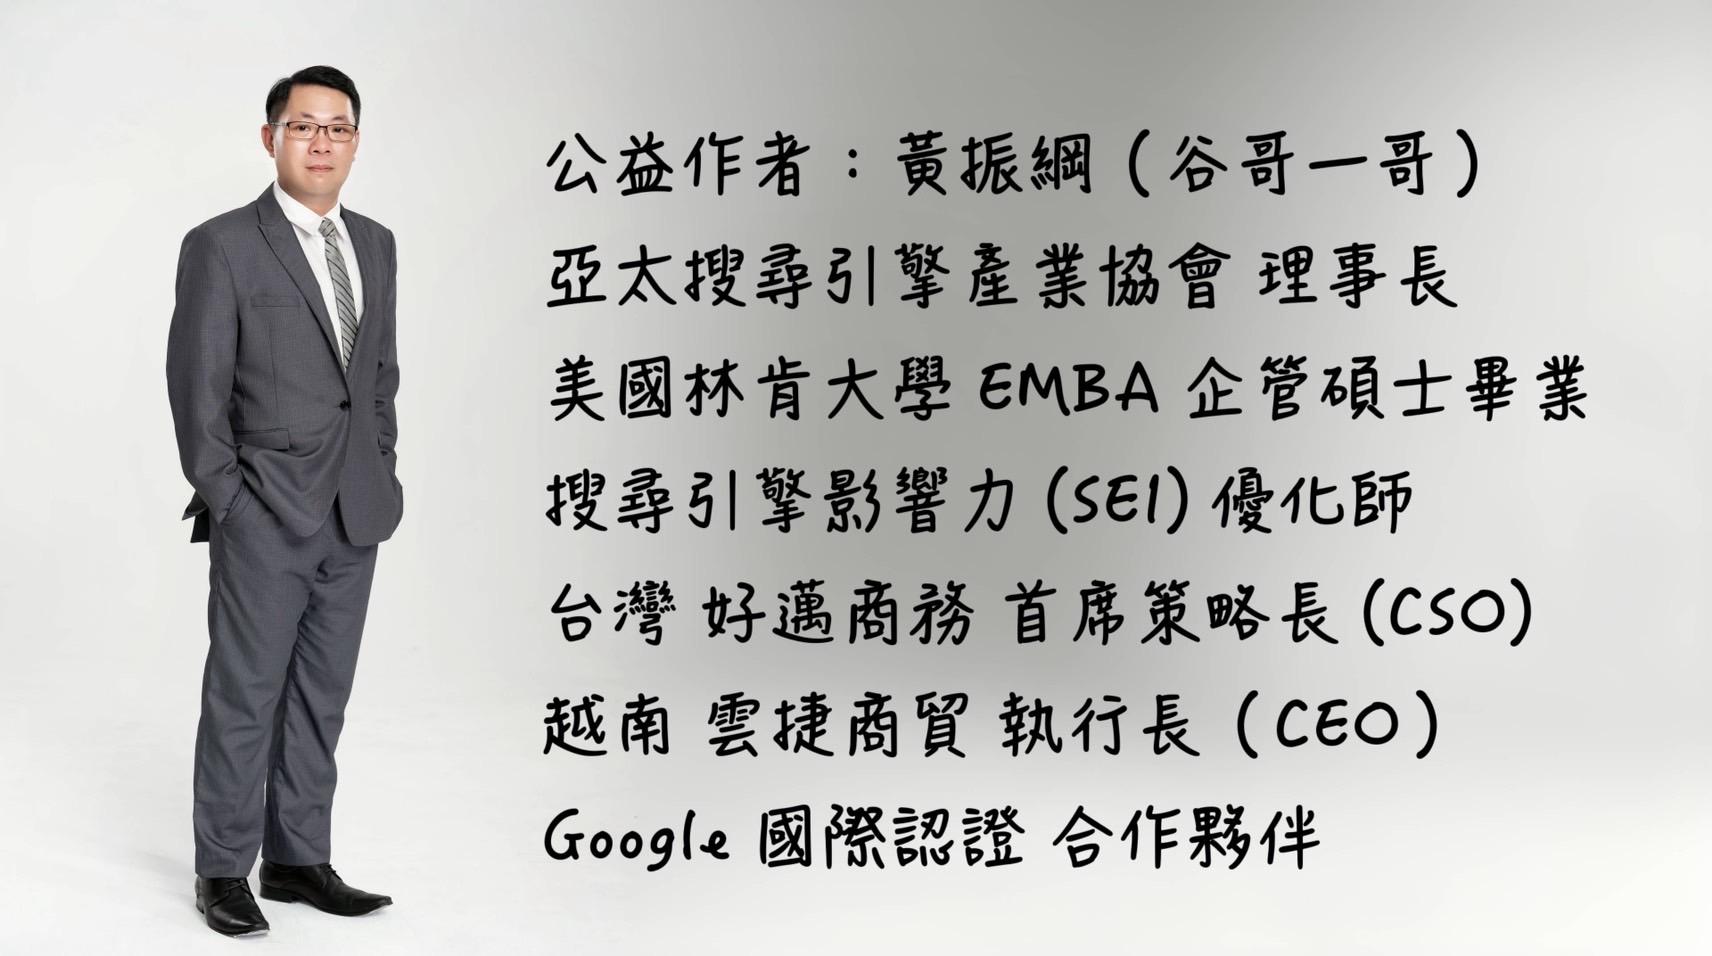 公益作者：黃振綱（谷哥一哥）黃振綱是亞太搜尋引擎產業協會的理事長，擁有美國林肯大學企管碩士學位，是搜尋引擎影響力（SEI）的優化師。他同時擔任台灣好邁商務的首席策略長（CSO）以及越南雲捷商貿的執行長（CEO）。此外，他也是Google國際認證的合作夥伴。